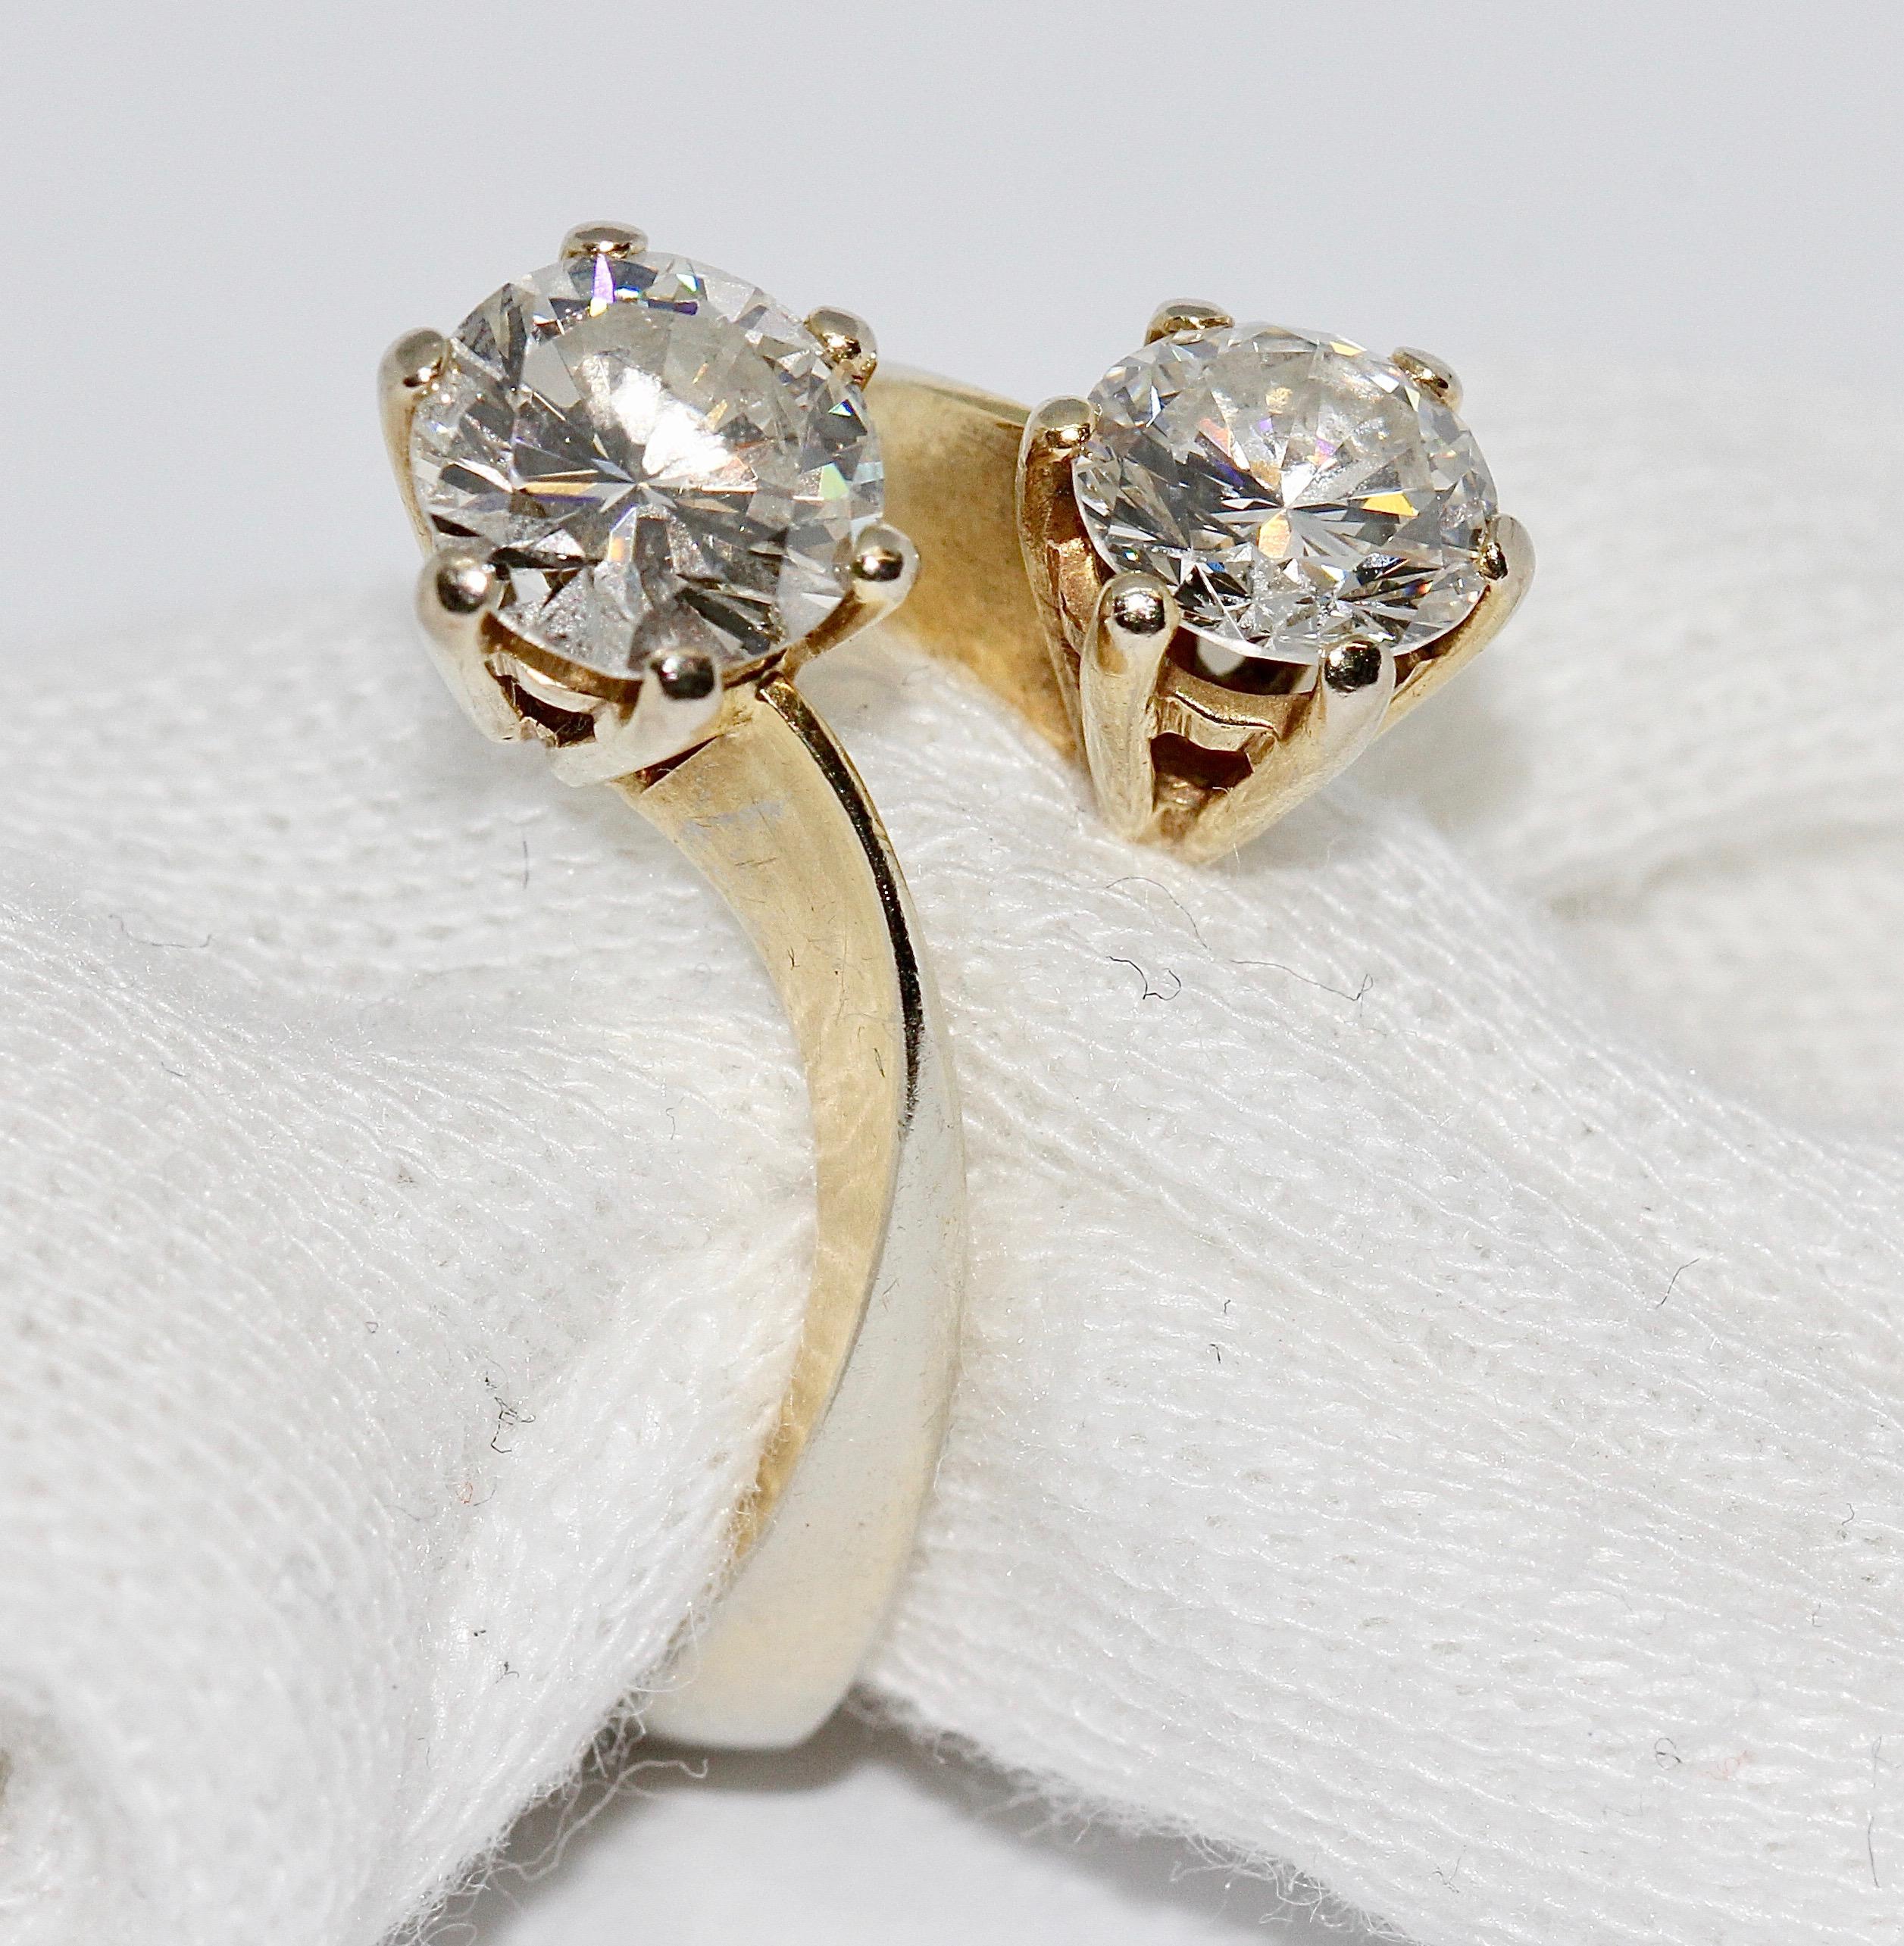 Luxueuse bague pour femme sertie de deux gros diamants solitaires. or 18 carats.

Clarté VVS2, couleur Top Wesselton. Chacun d'entre eux a environ 0,95 ct. et 1,15 ct.

Nous pouvons ajuster l'anneau à la taille souhaitée.

Certificat d'authenticité